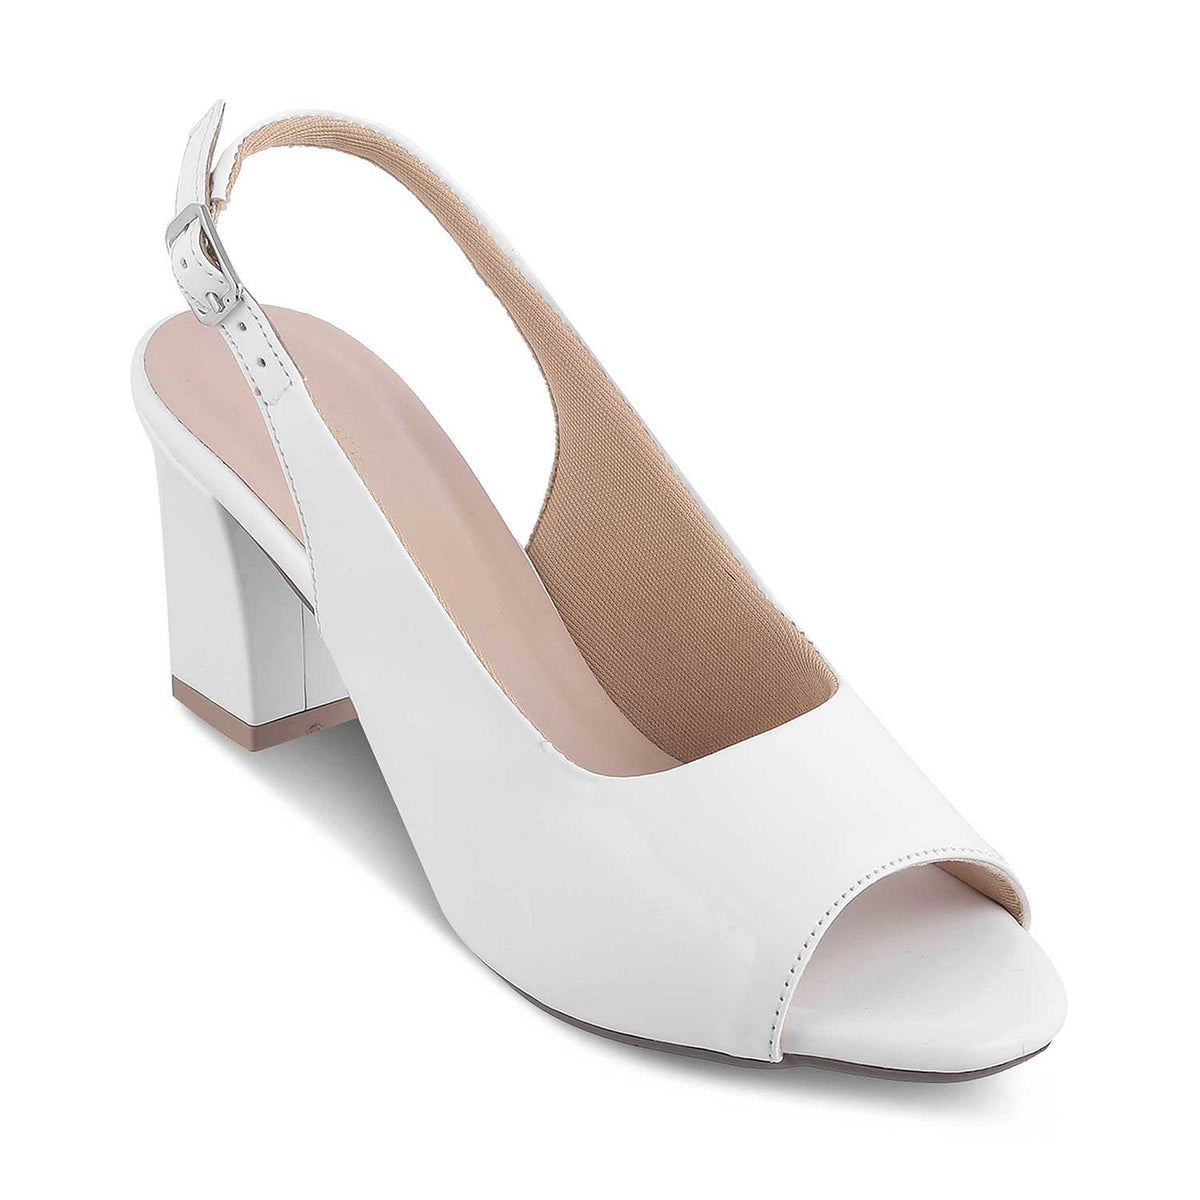 The Woo White Women's Dress Block Heel Sandals Tresmode